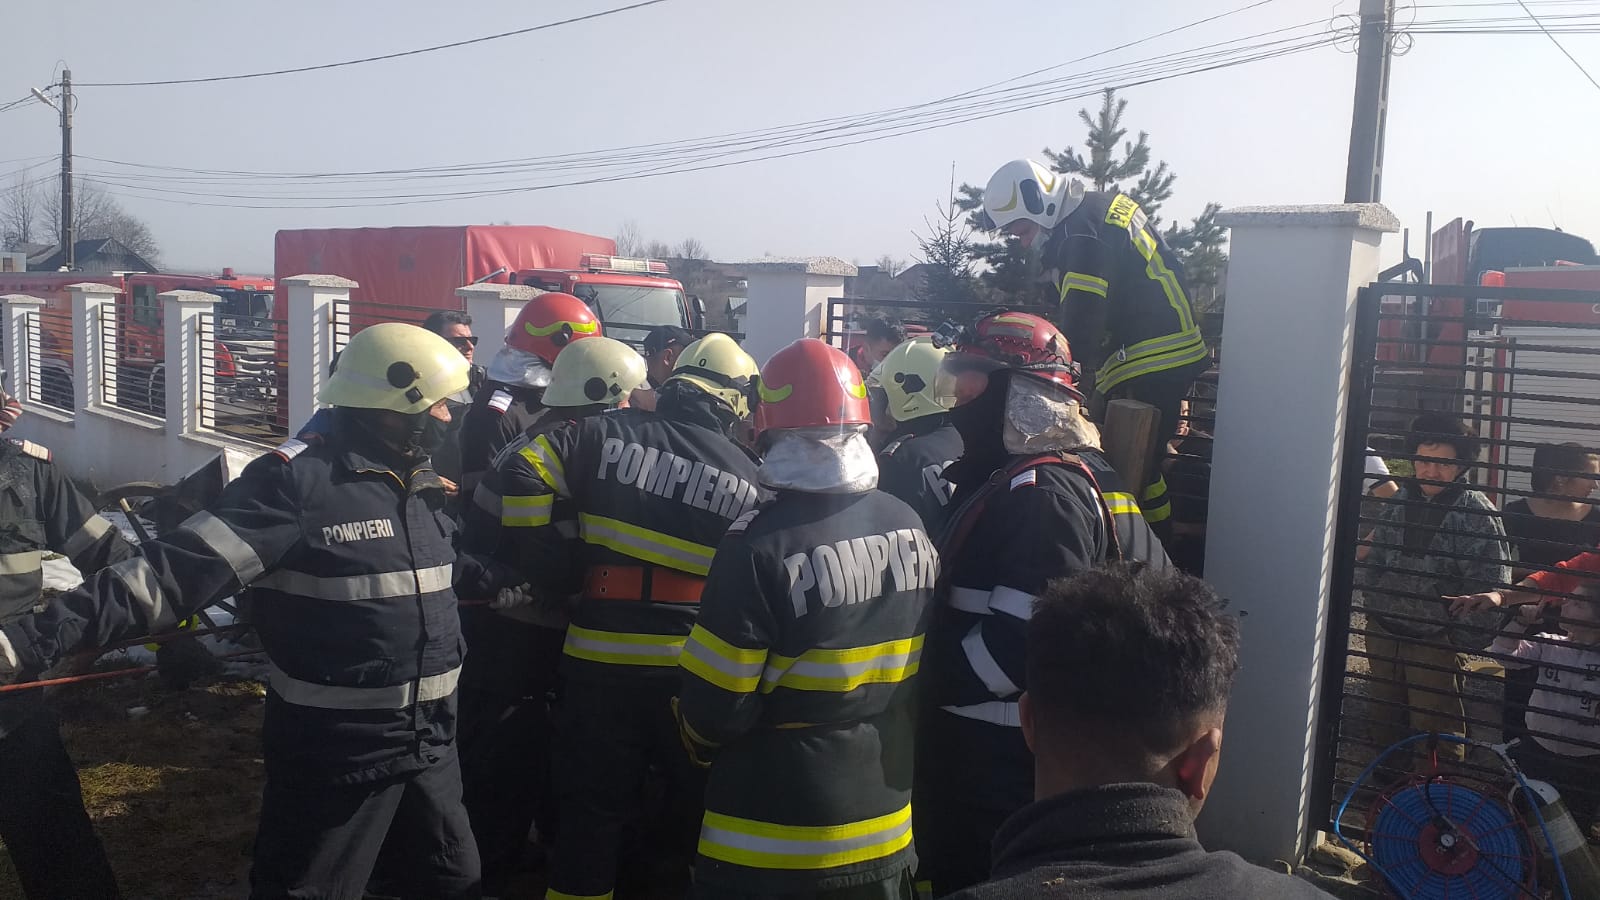 Intervenție a pompierilor pentru salvarea unei persoane căzute într-o fântână, județul SV